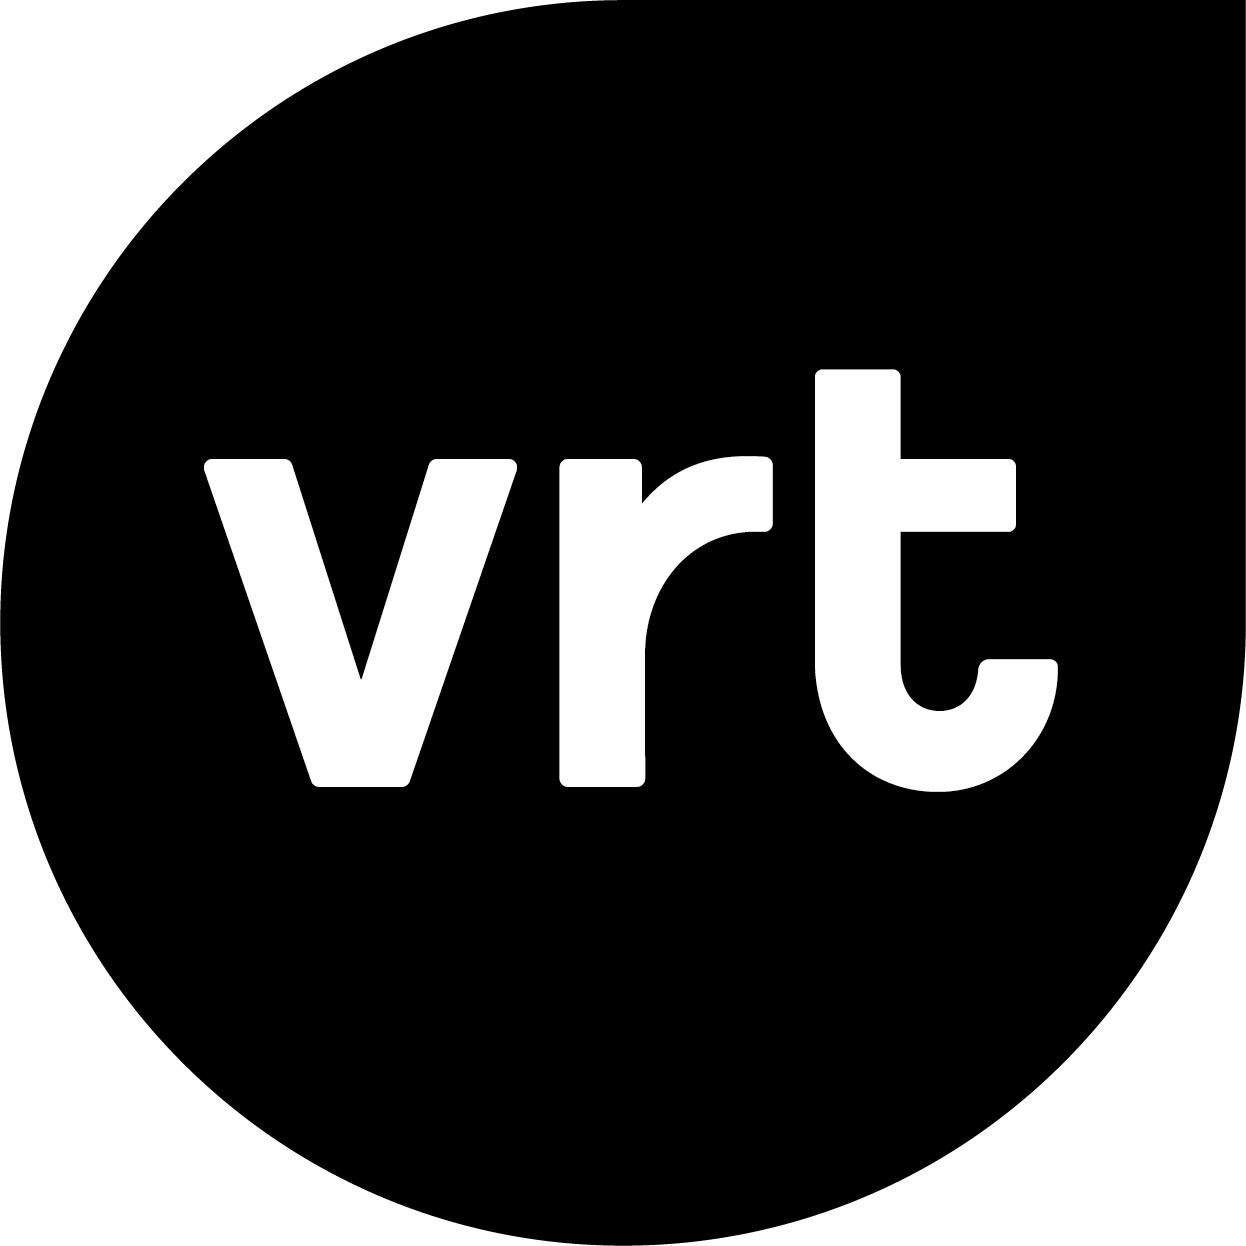 Logo klant van White Light: VRT